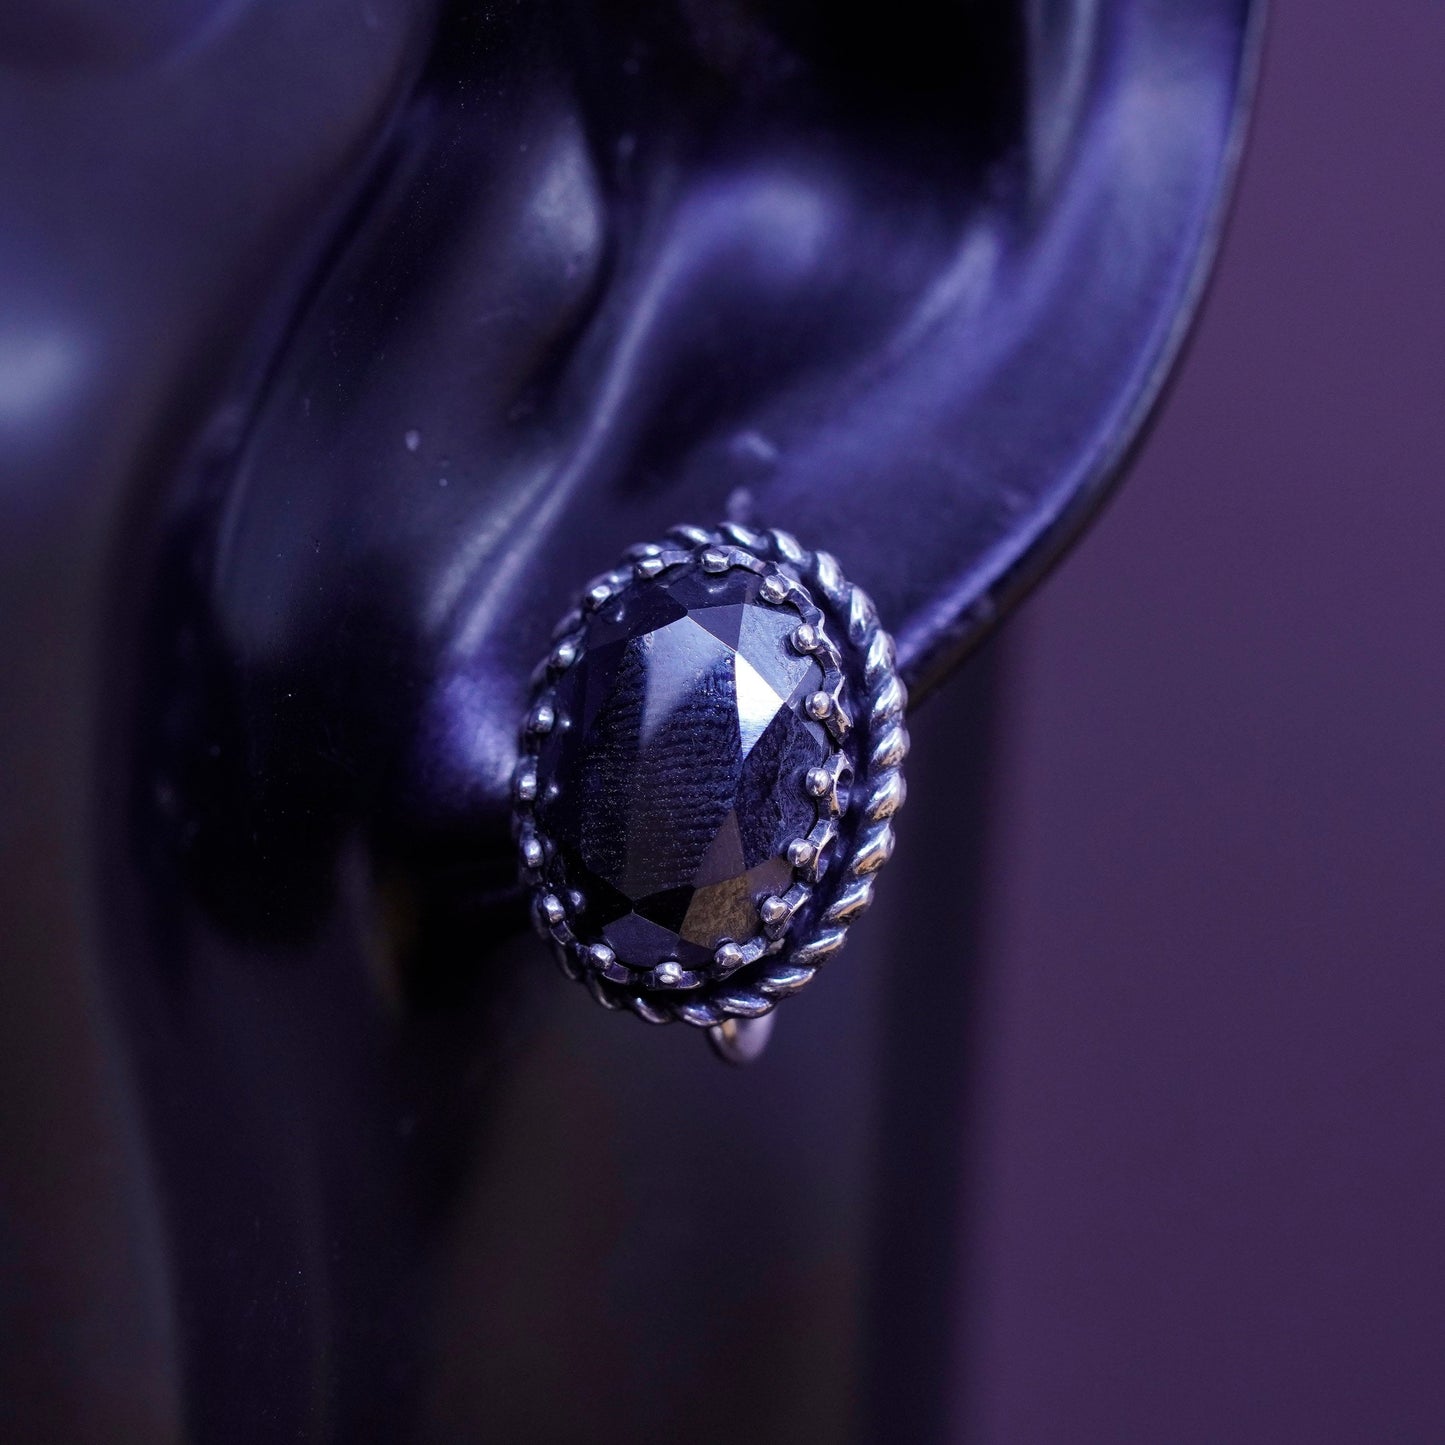 Vintage danecraft Sterling silver handmade earrings, 925 screw back hematite